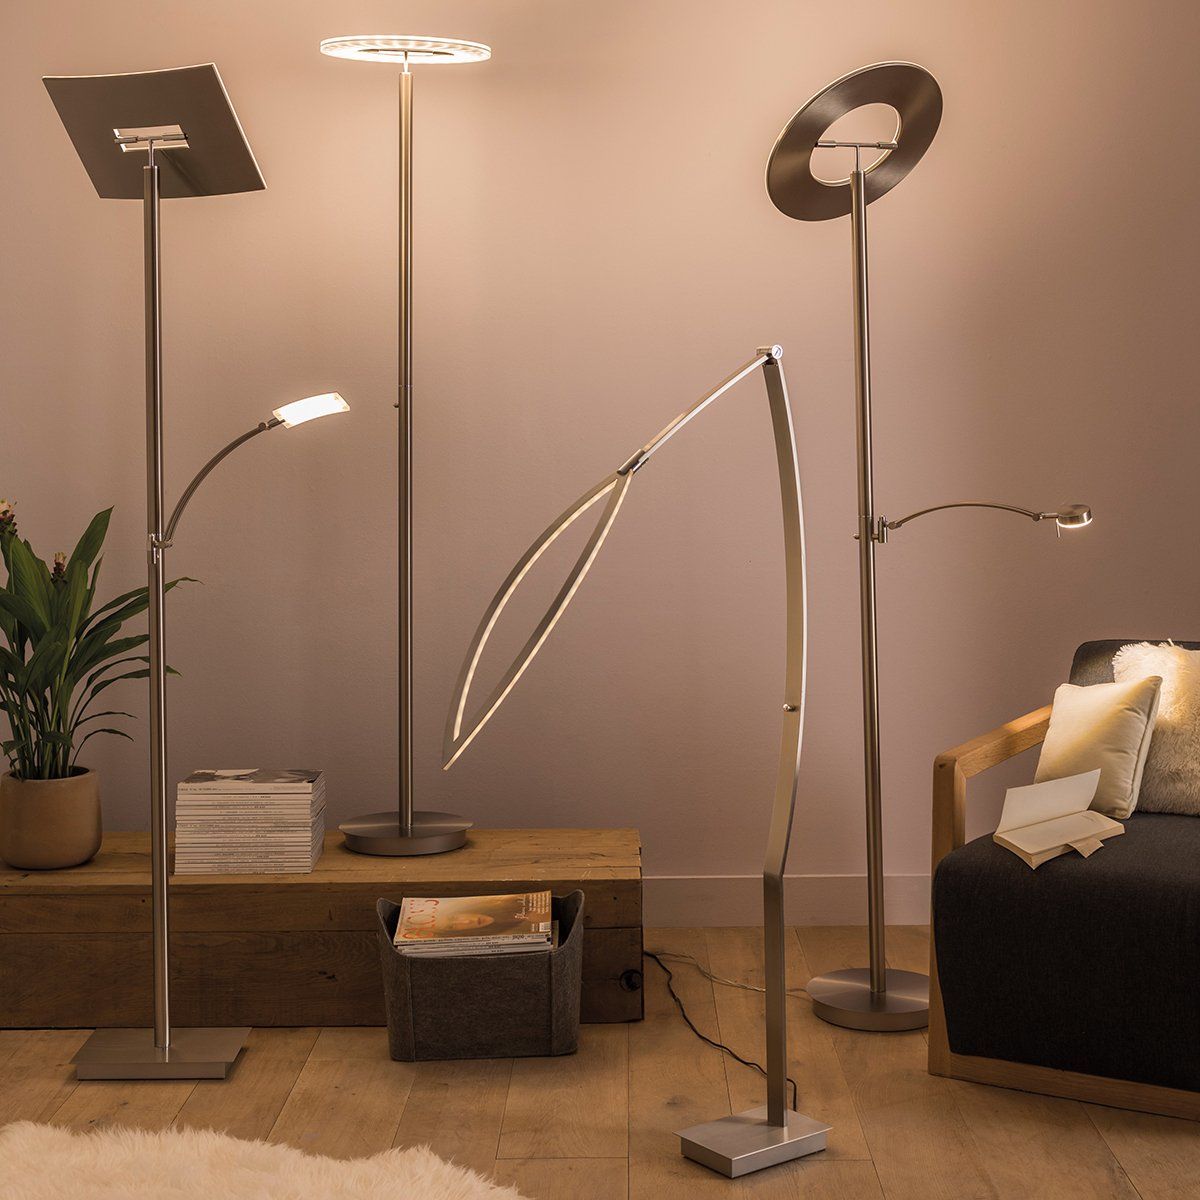 Lampe industrielle, lampadaire salon bois, lampe sur pied design